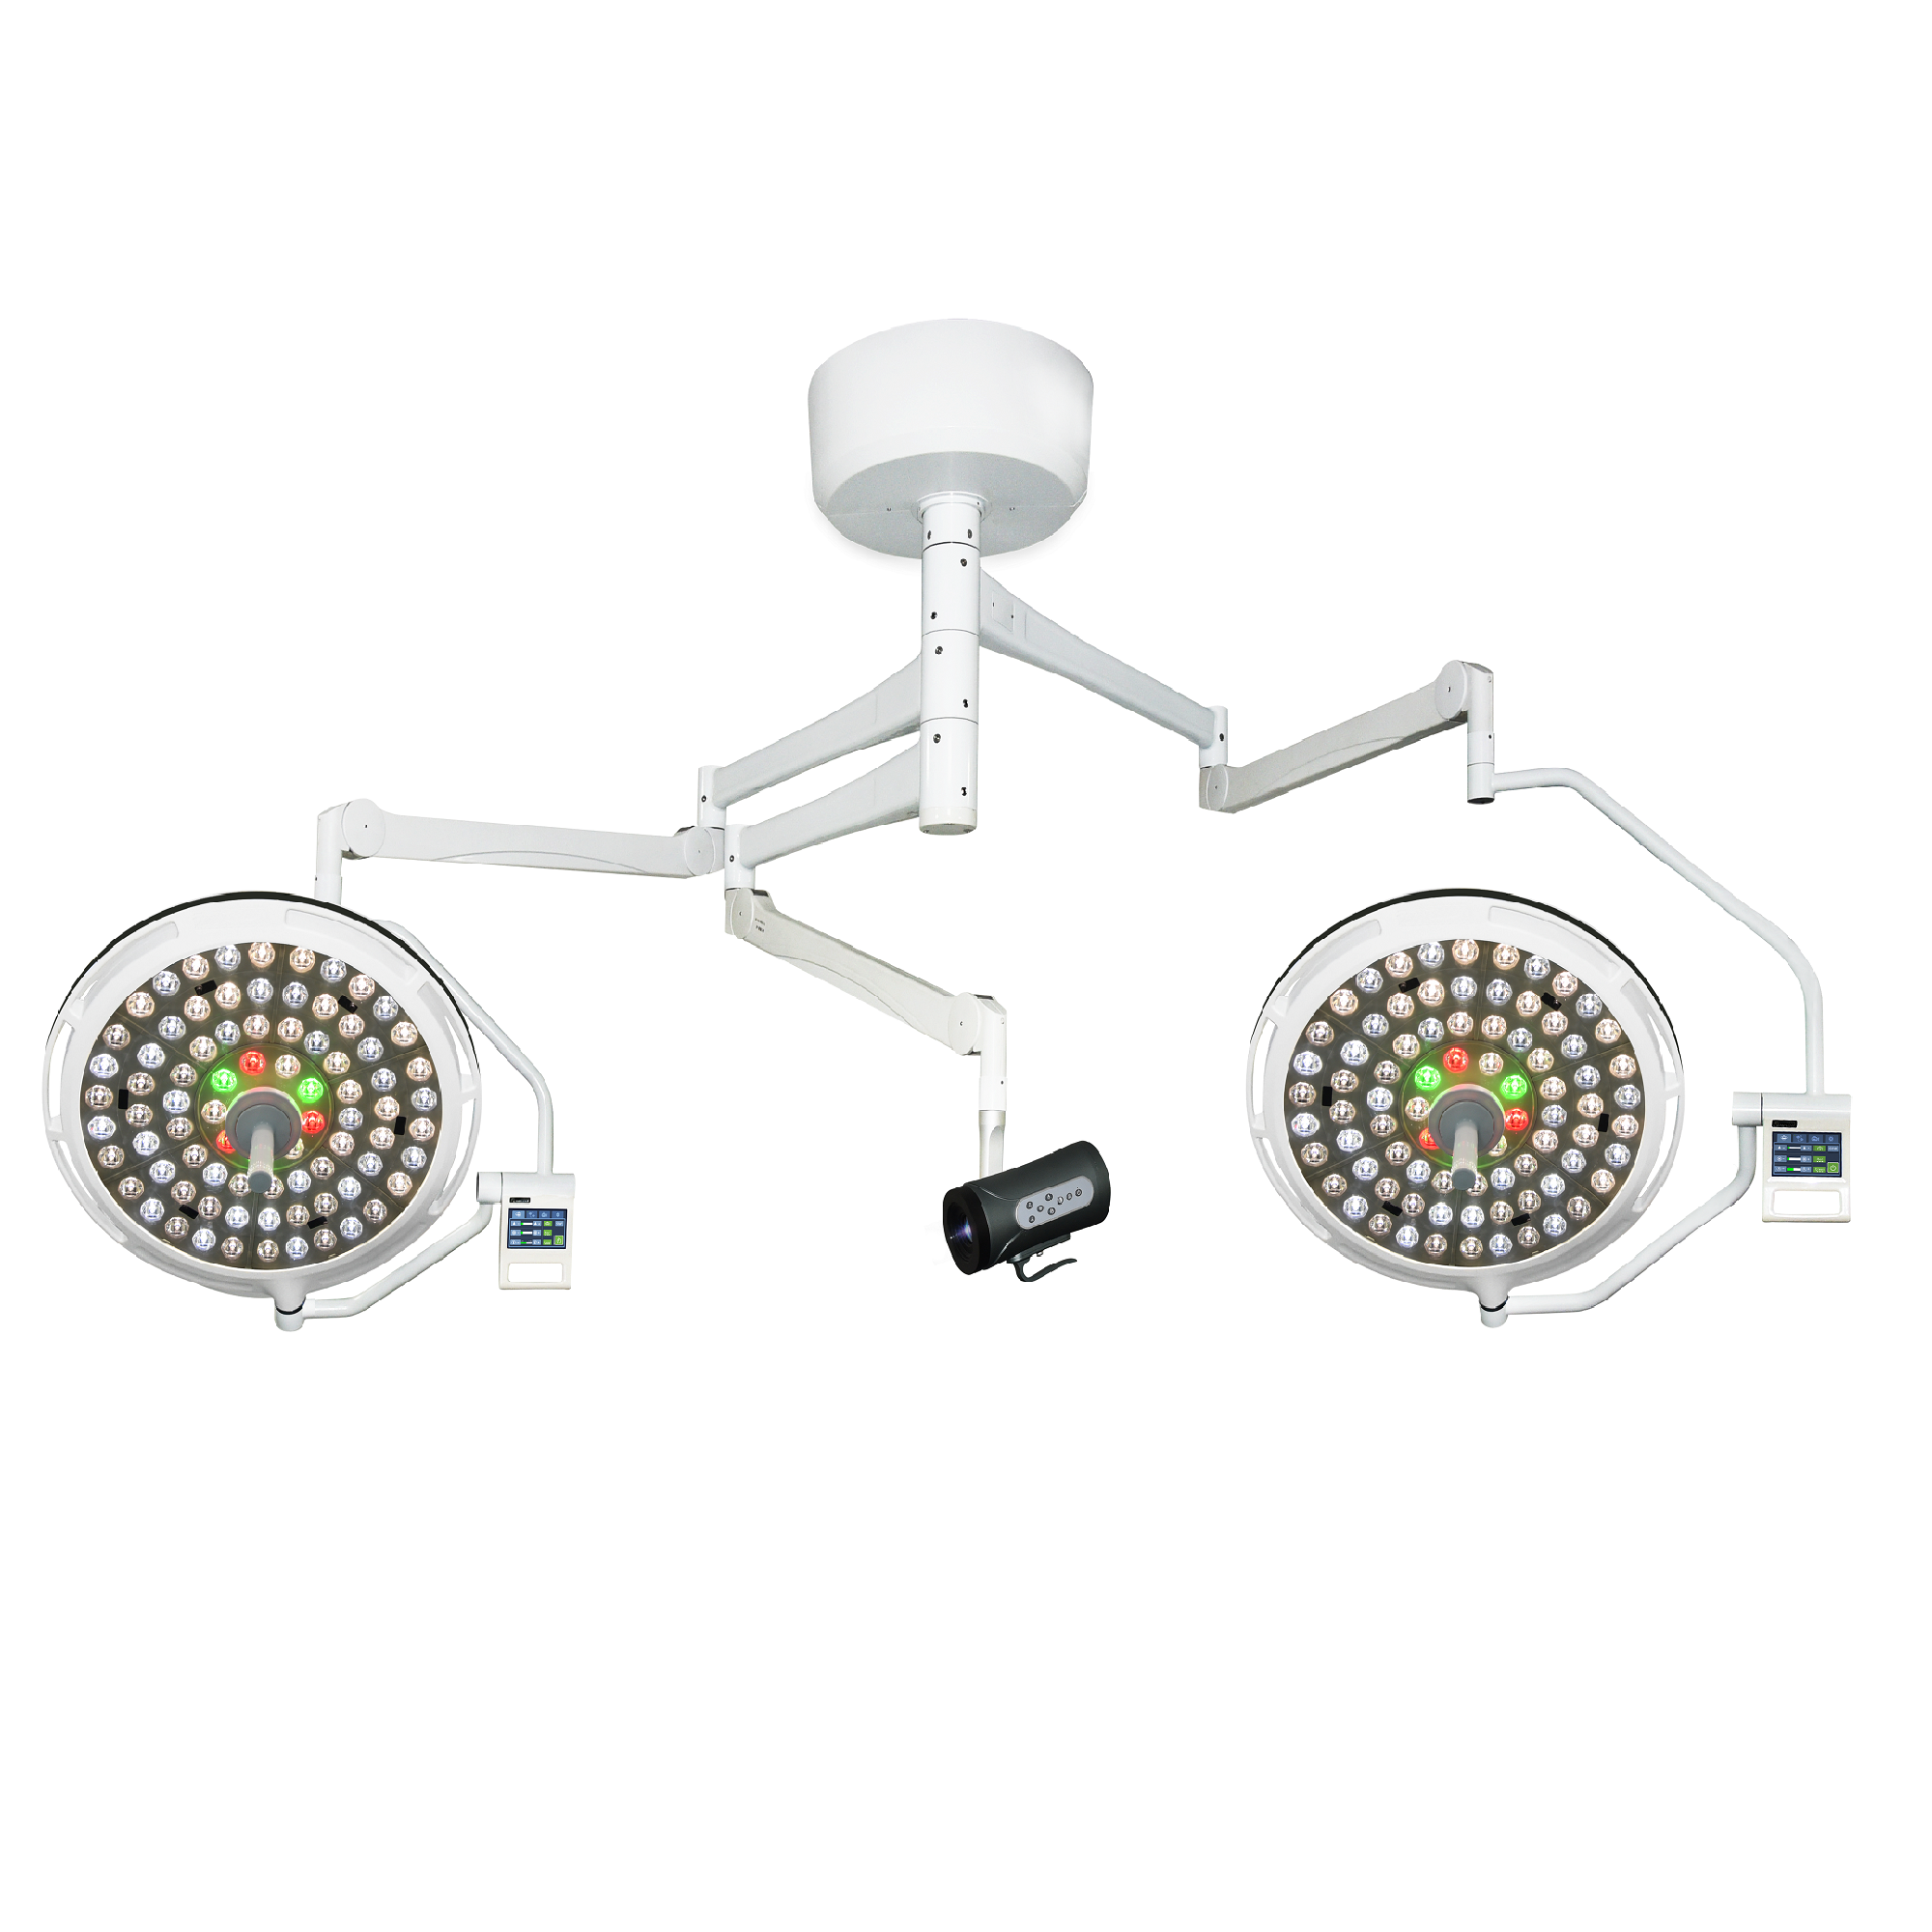 ชนิดเพดาน โคมไฟ LED ผ่าตัดแบบไร้เงา ห้องผ่าตัด ไฟ LED แลกเปลี่ยนกับกล้อง LED700/500